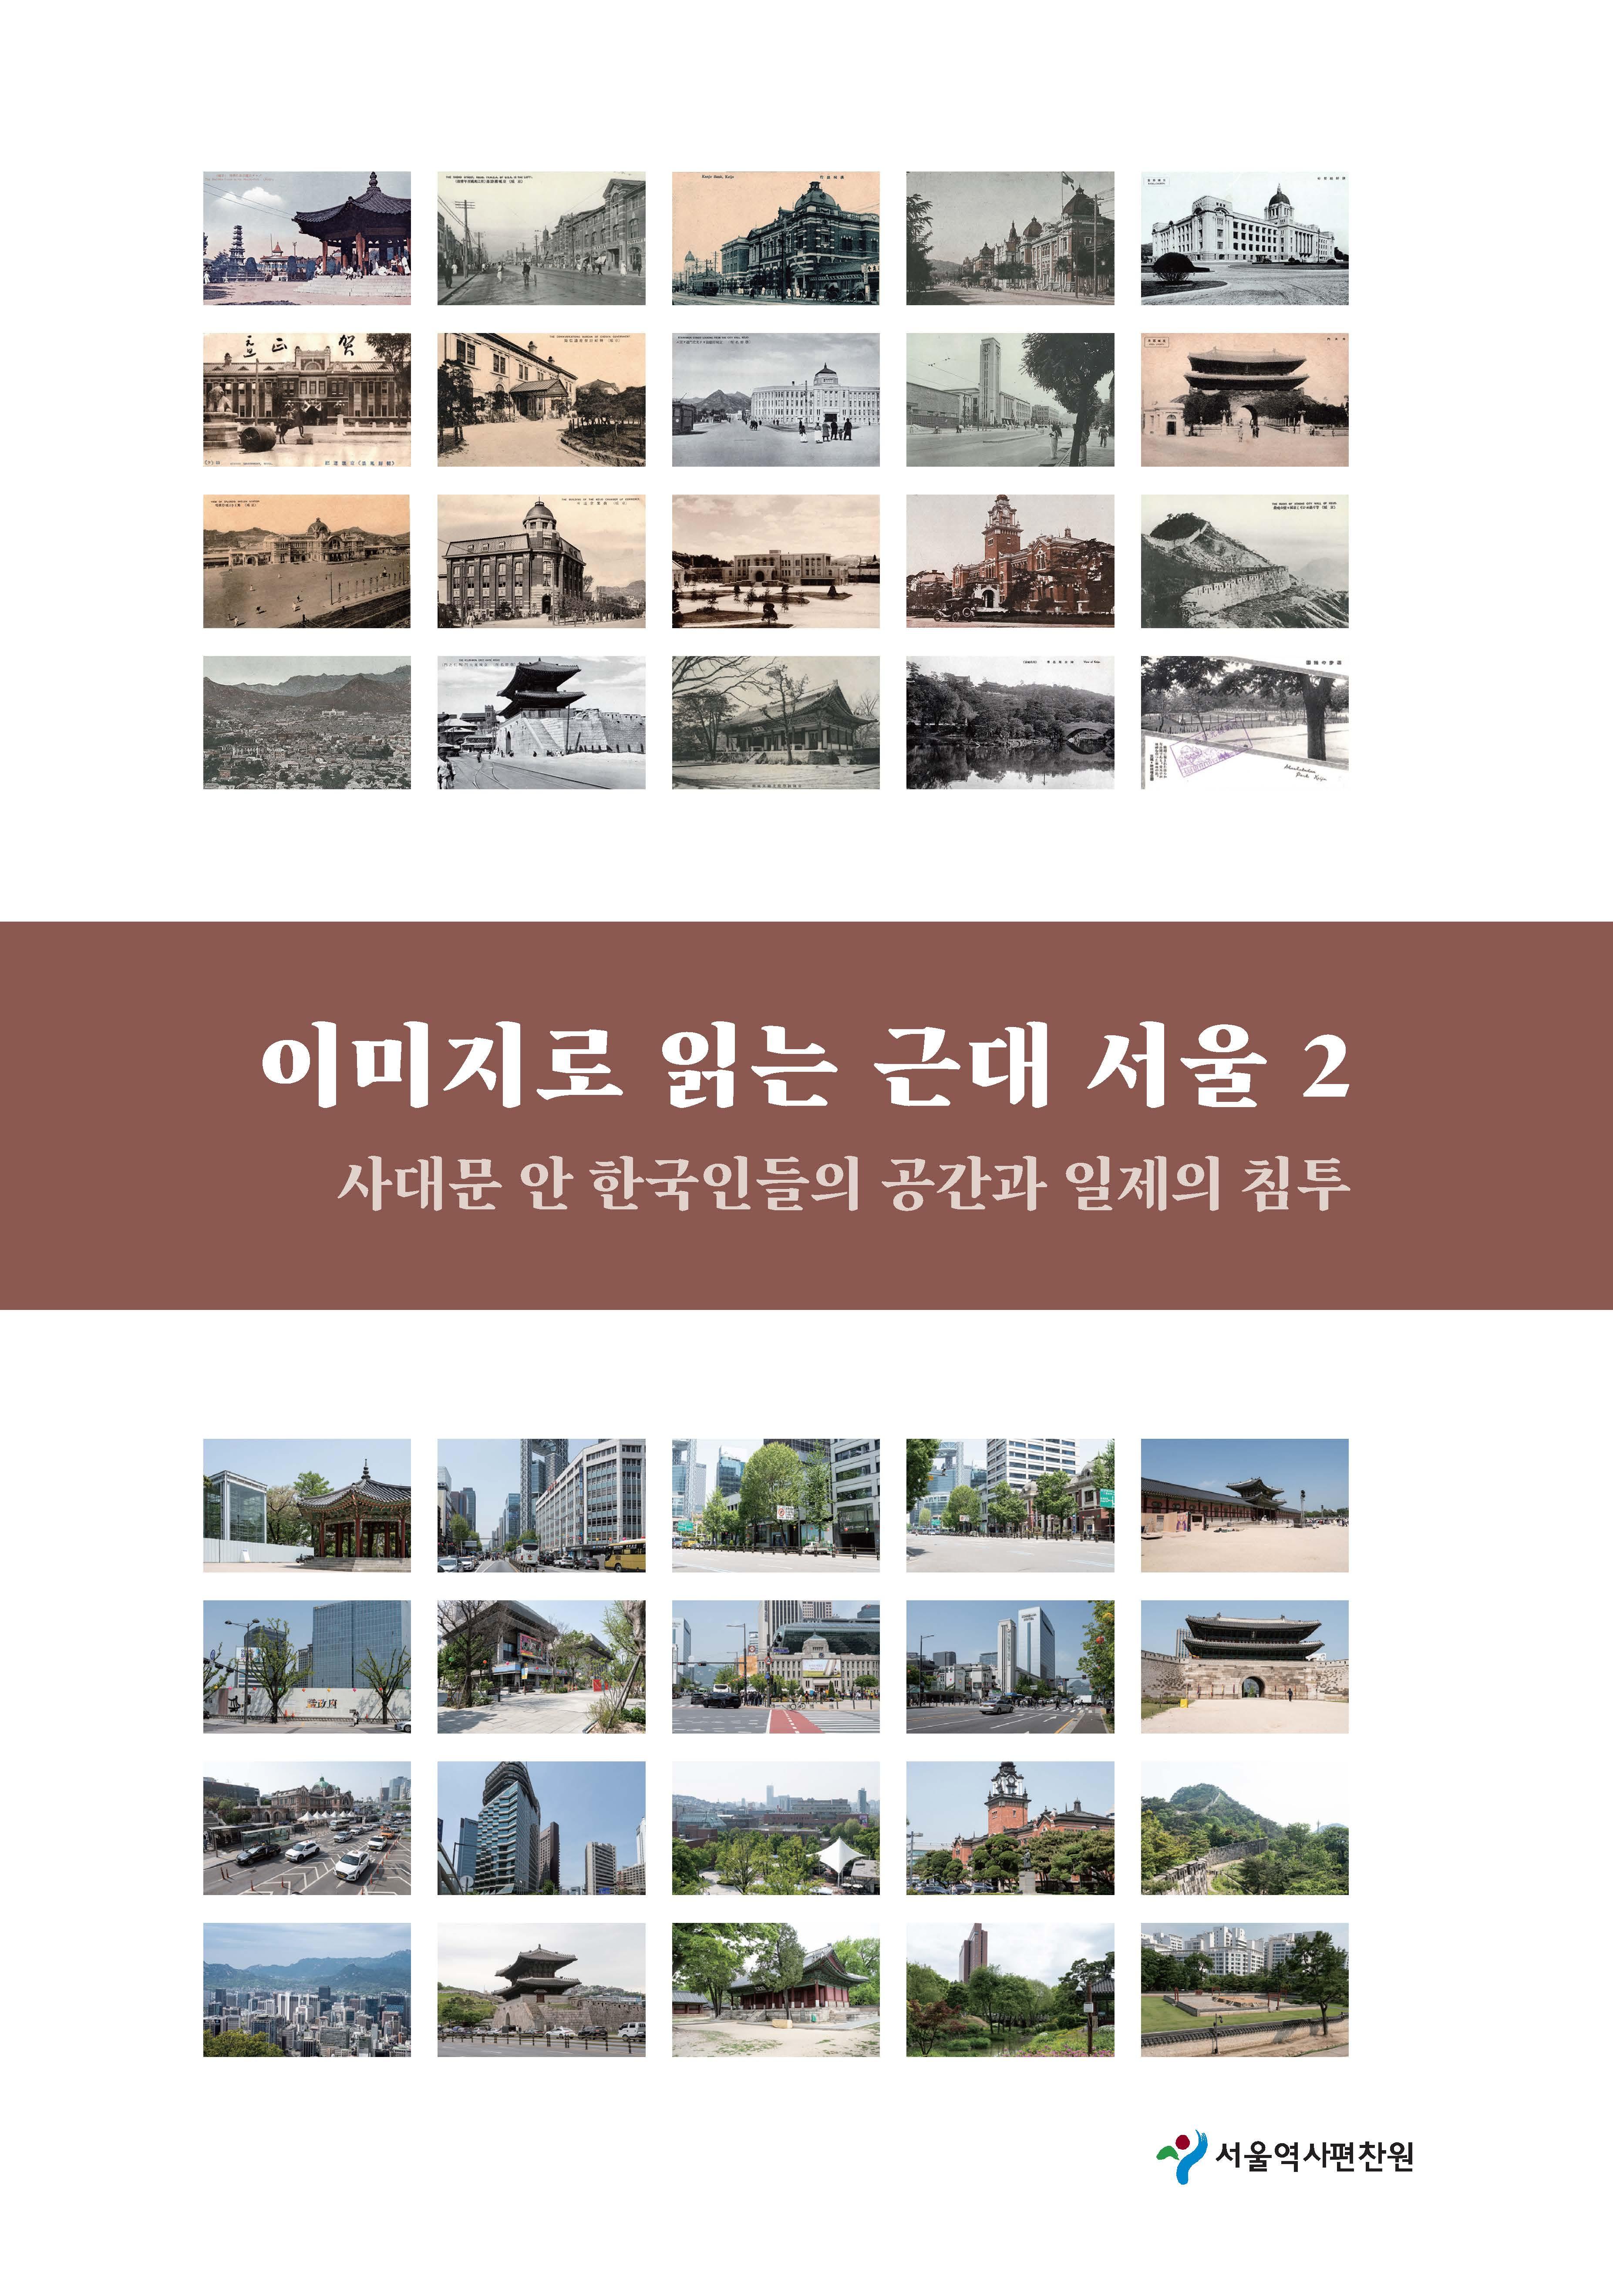 2. 사대문 안 한국인들의 공간과 일제의 침투